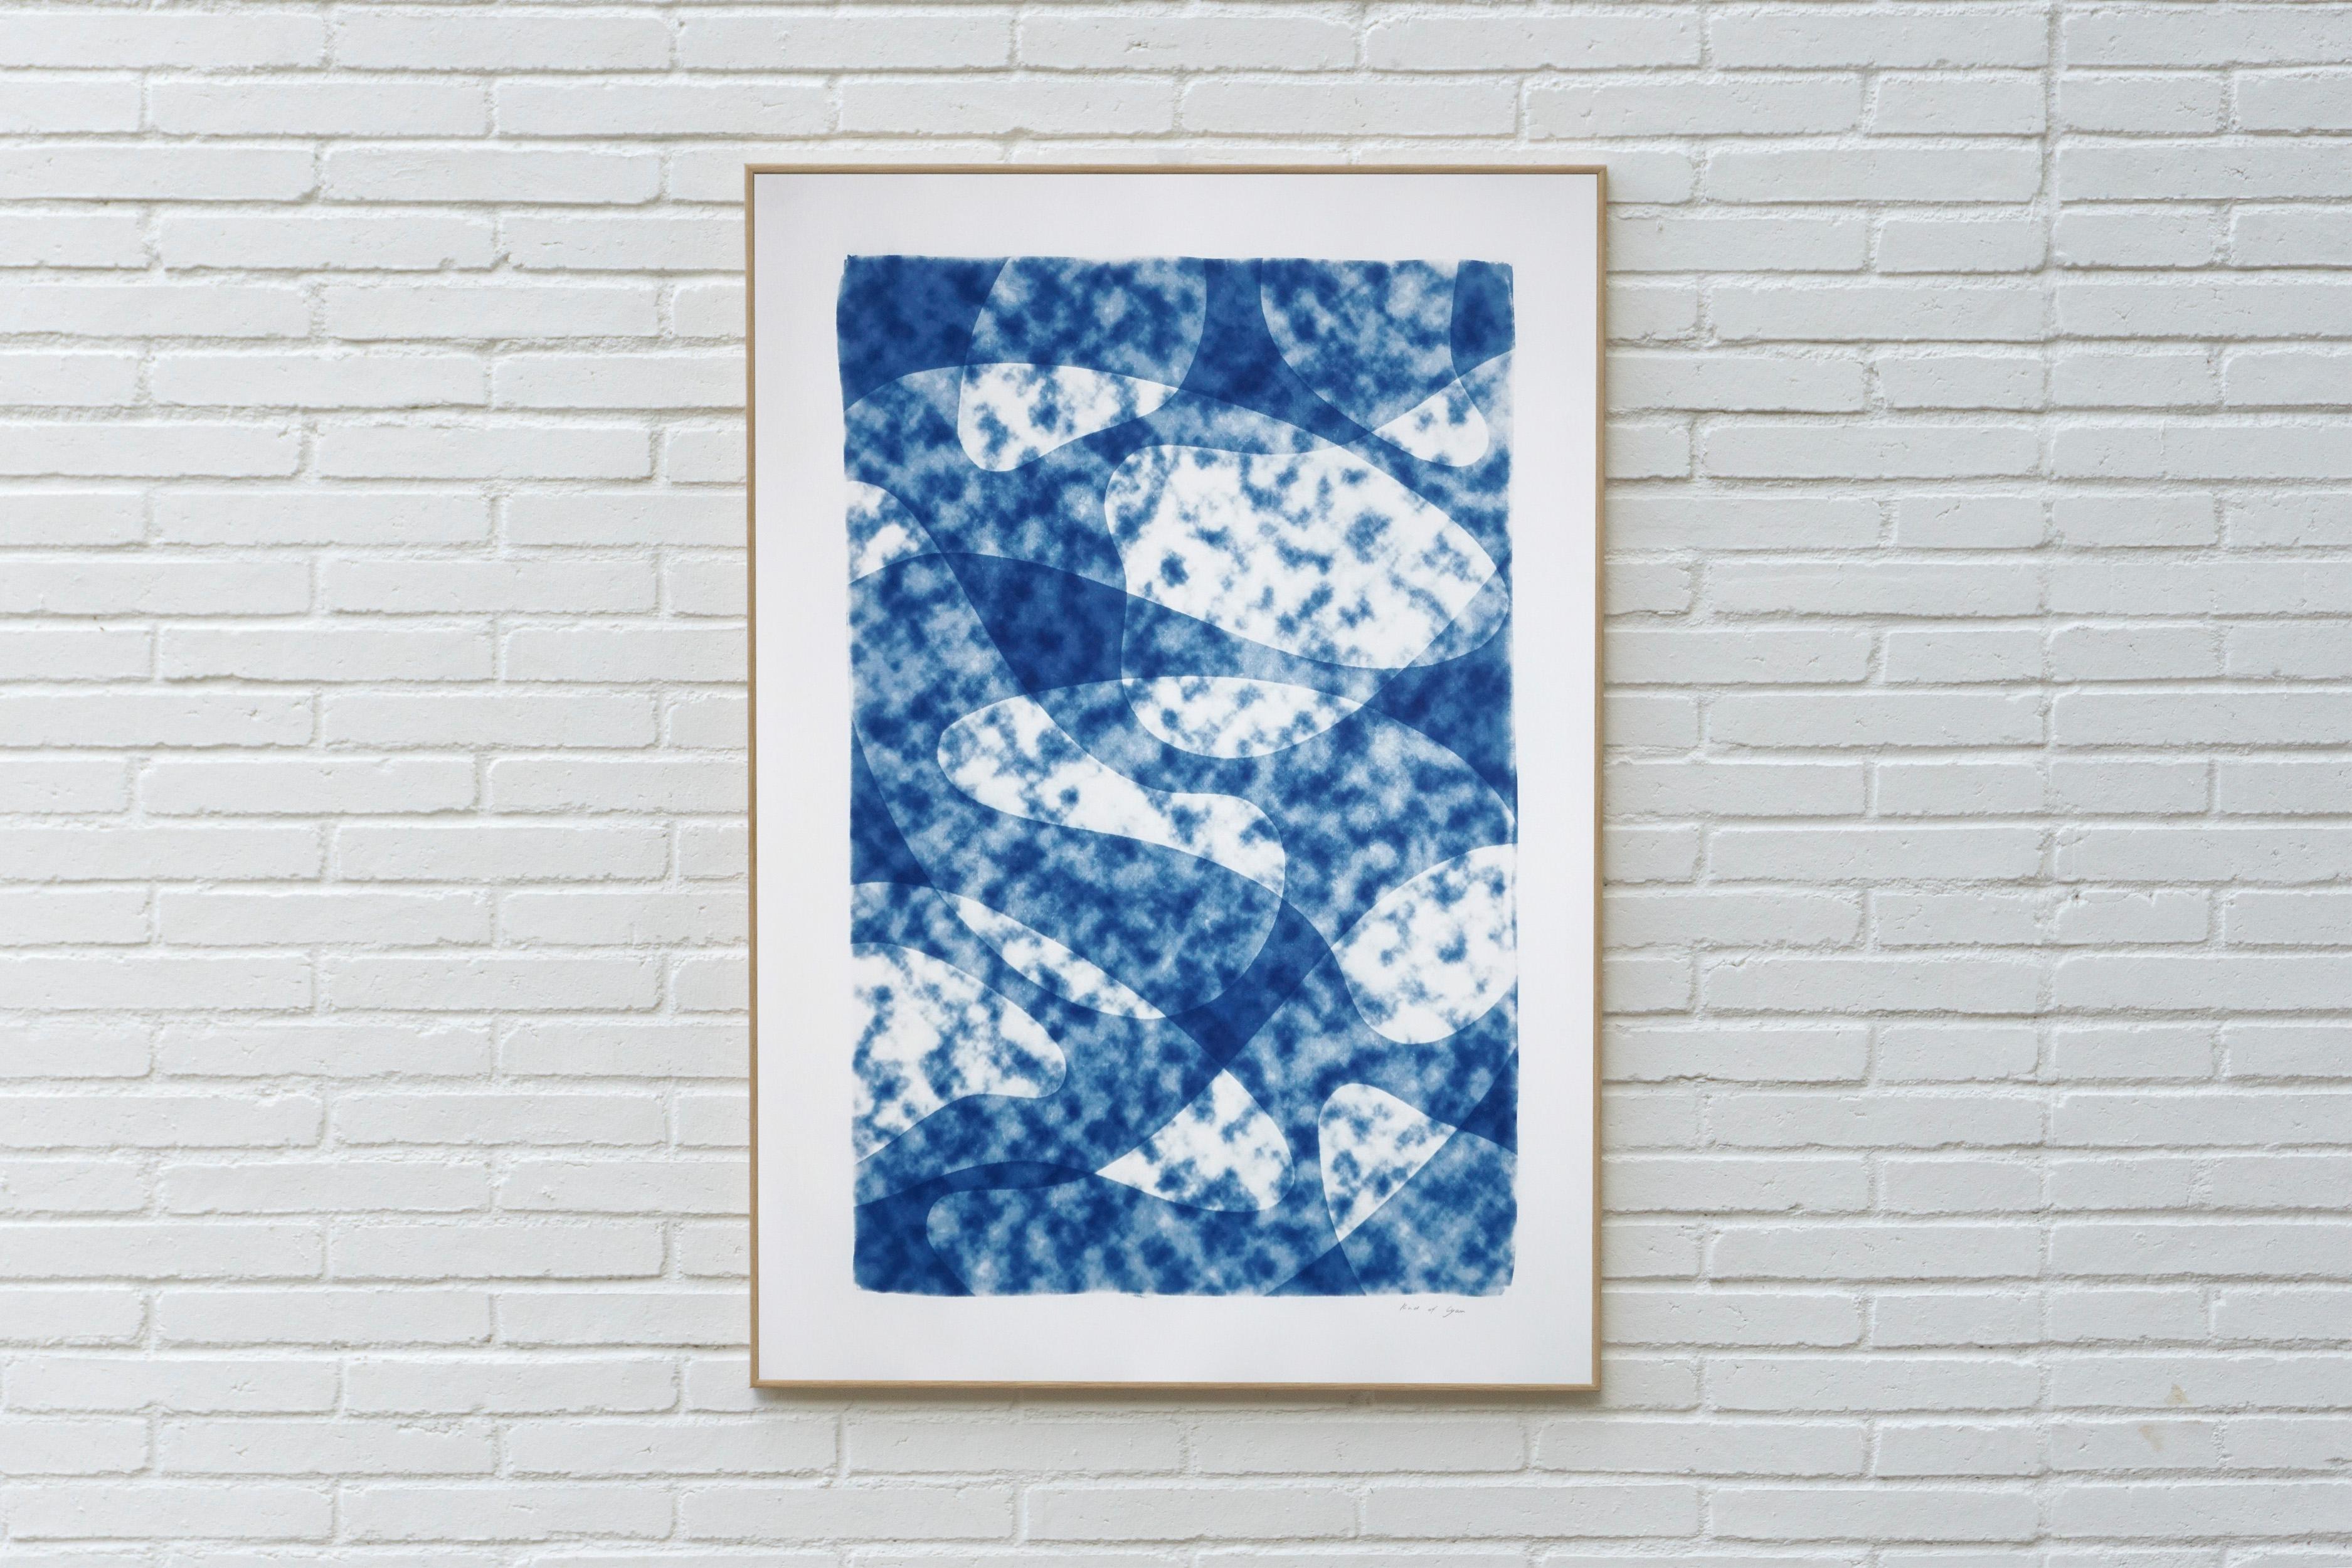 Looking Up at The Clouds, einzigartige Monotypie in Blautönen, Avantgarde-Formen  – Photograph von Kind of Cyan